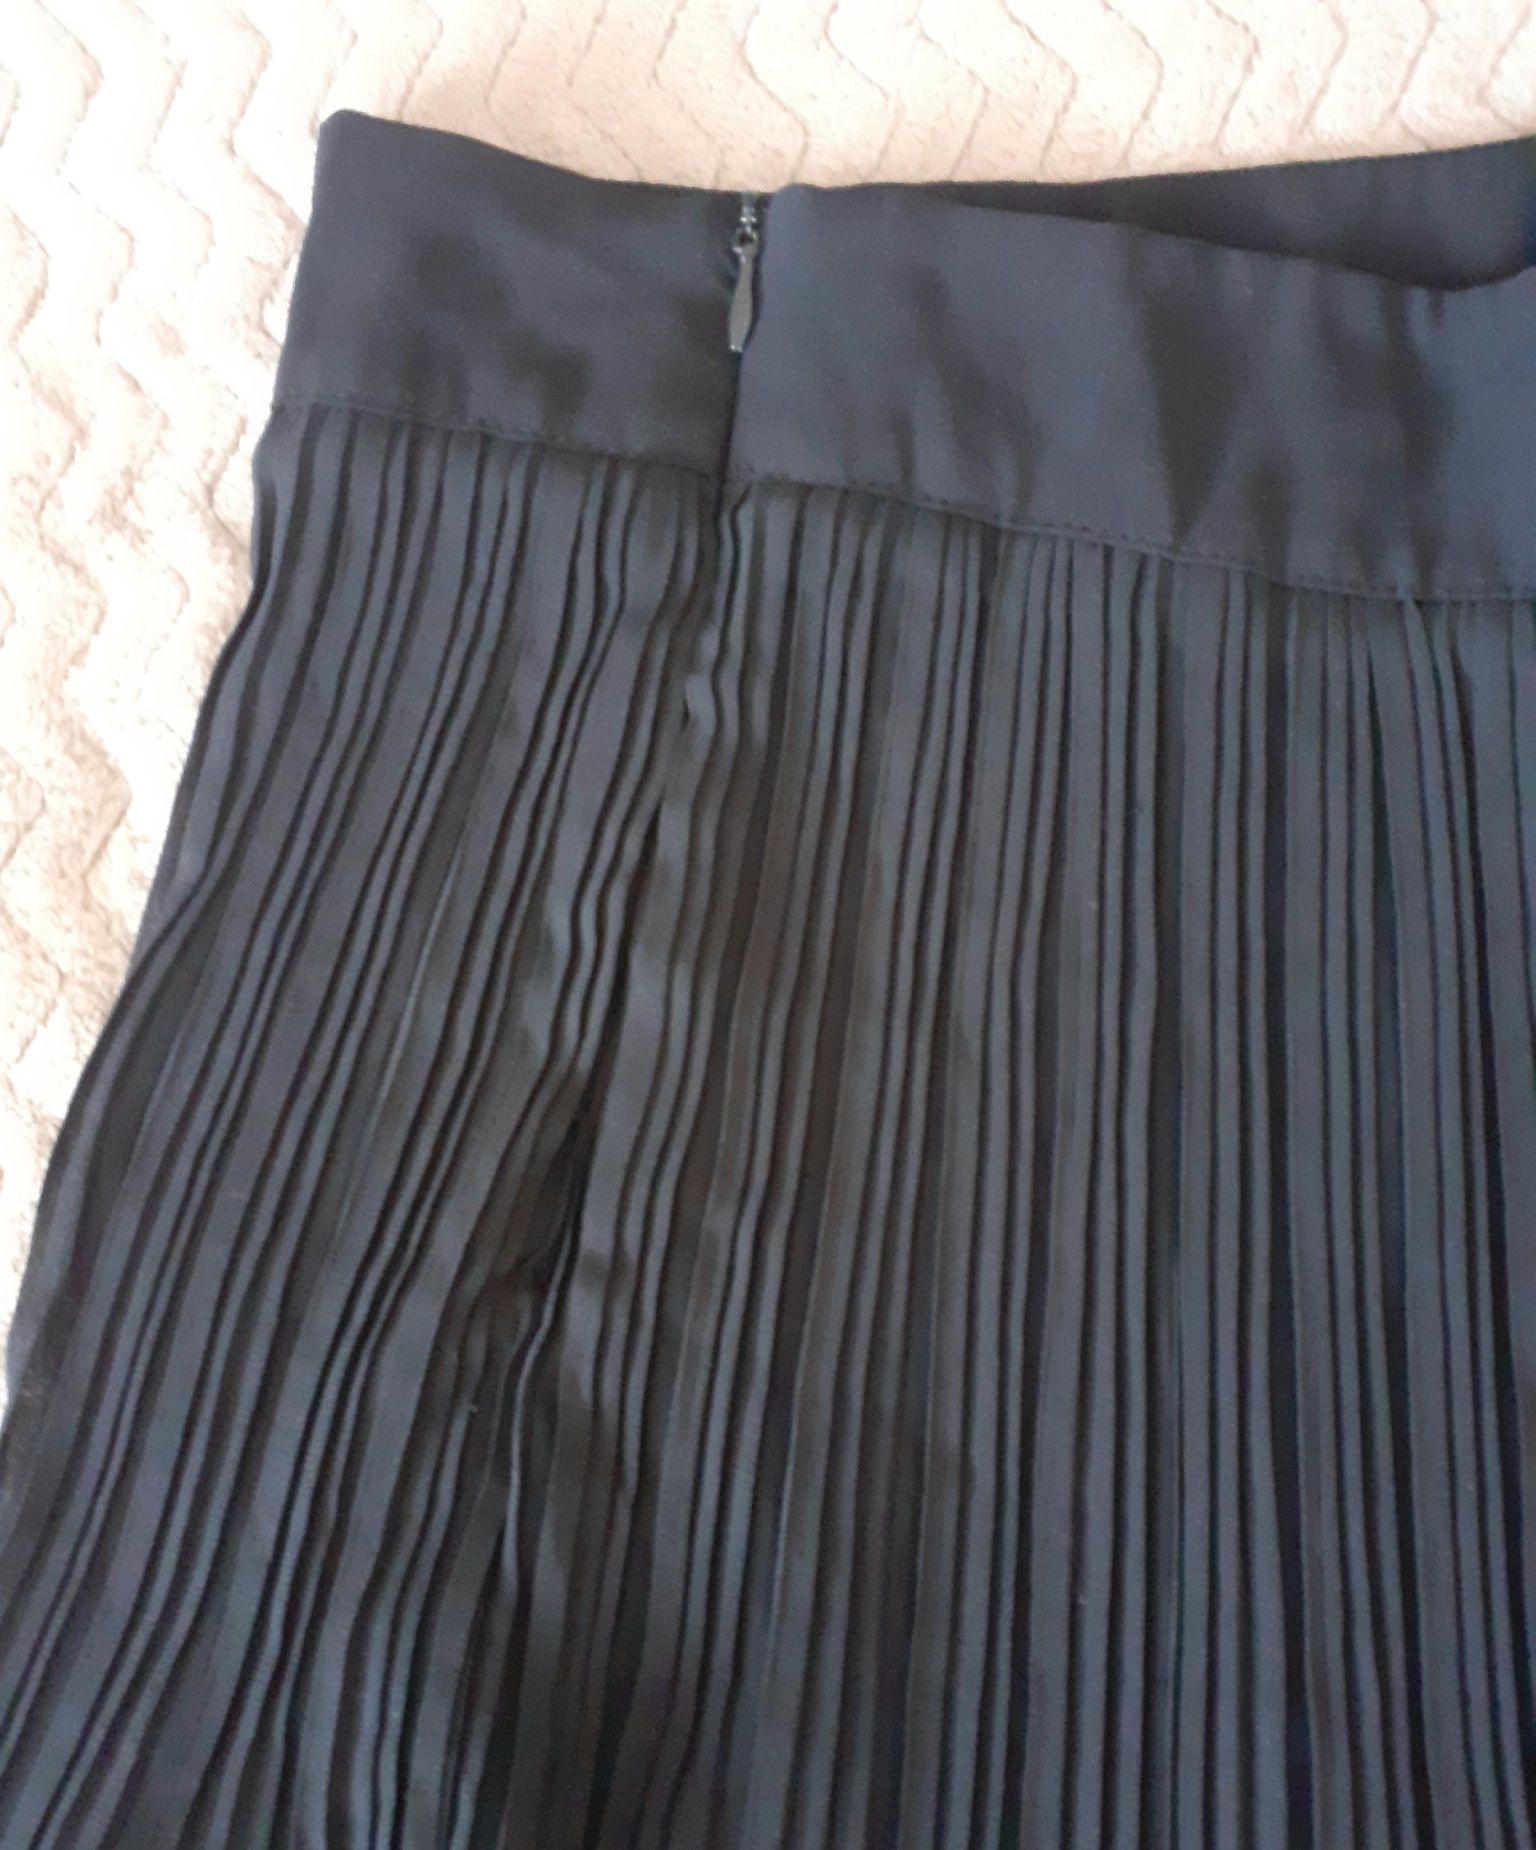 Spódnica czarna krótka plisowana S/M